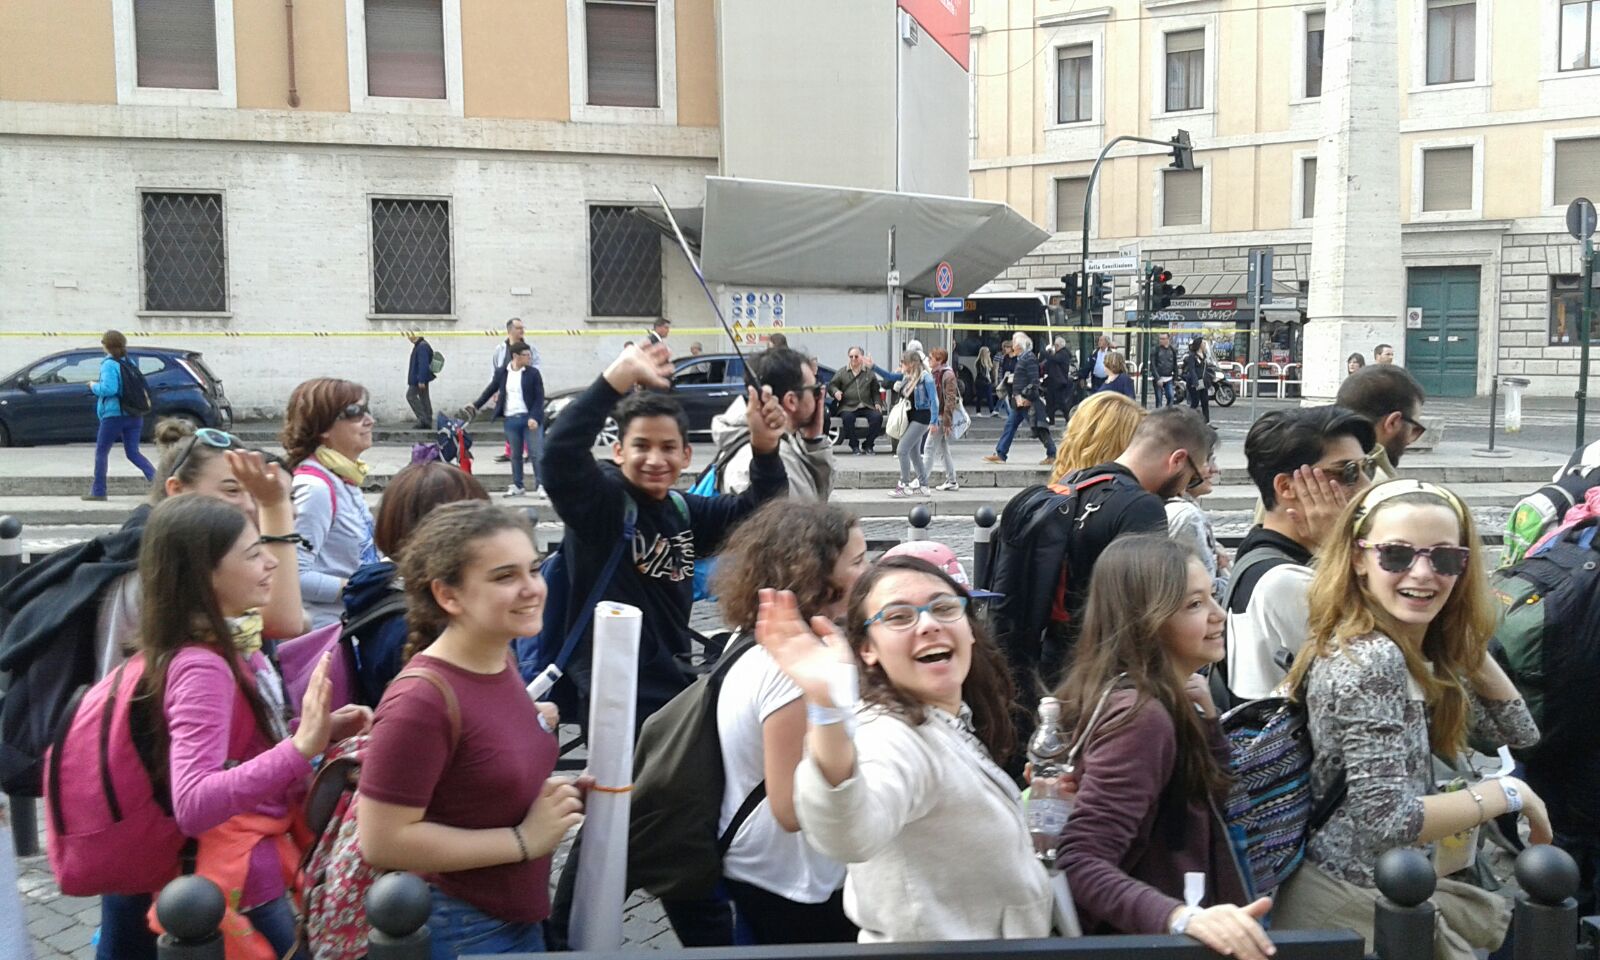 Jubileu recebe adolescentes de todo o mundo no Vaticano / Foto: Danusa Rego